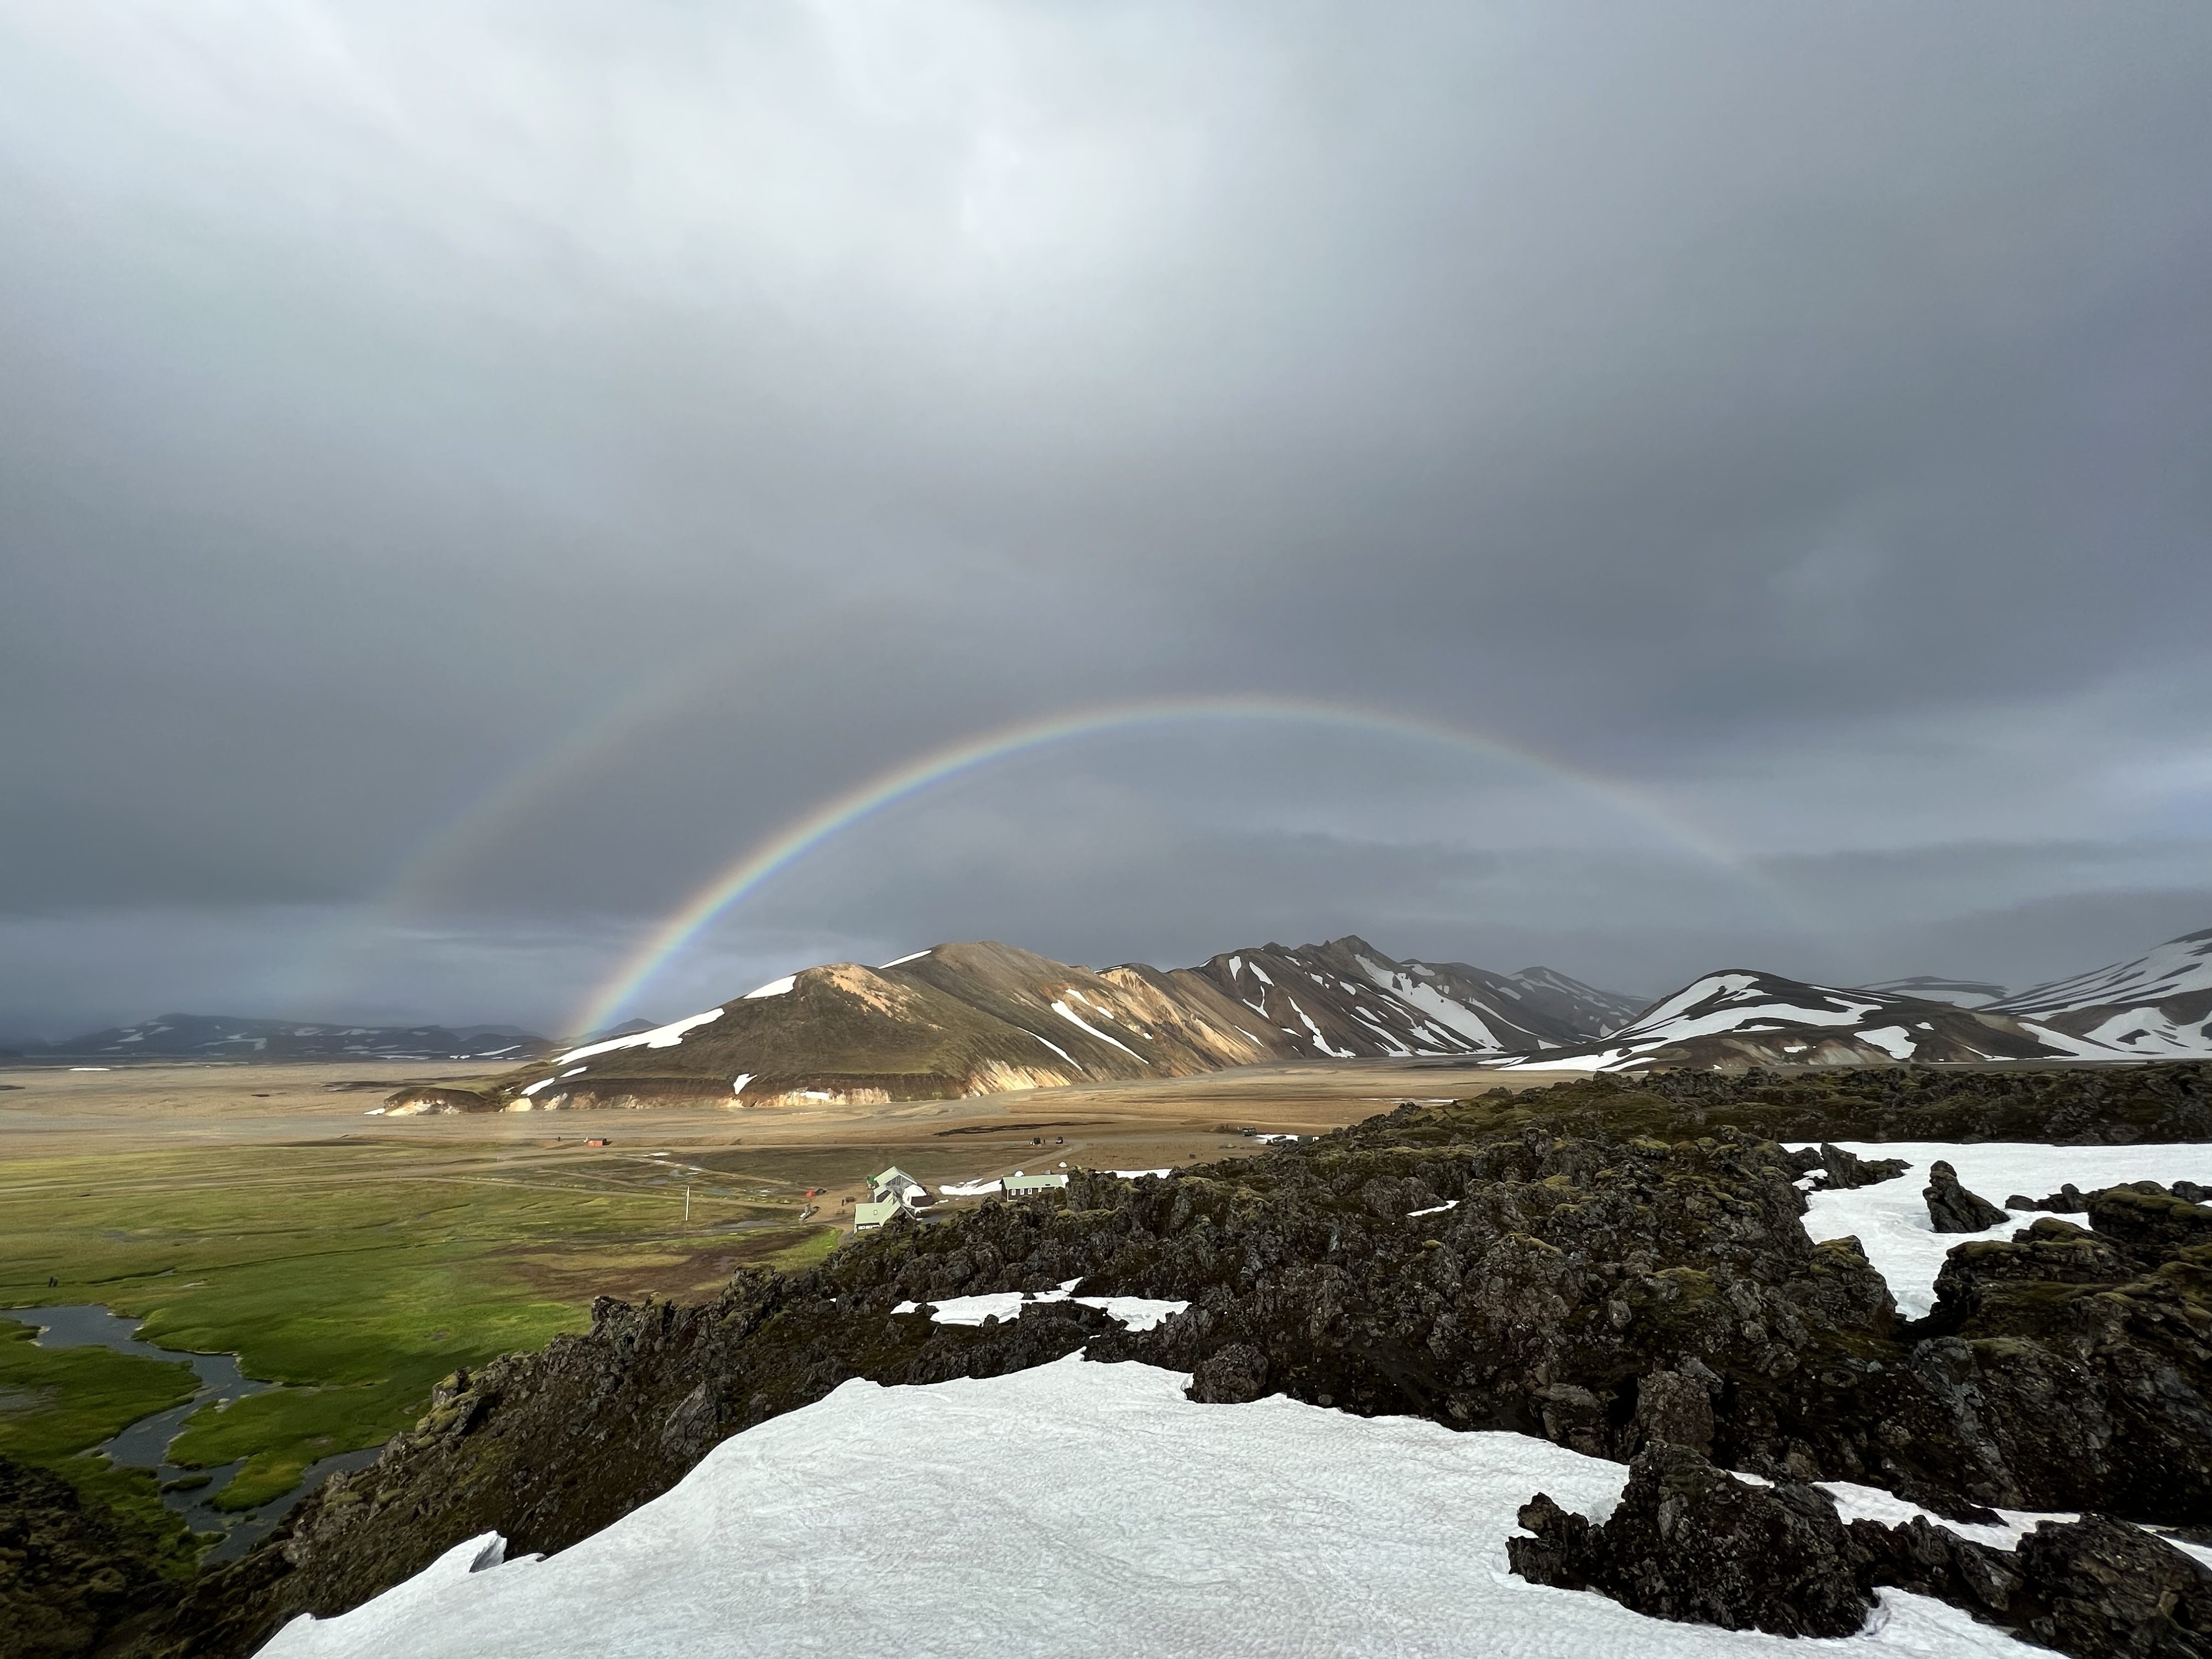 a rainbow over a snowy mountain